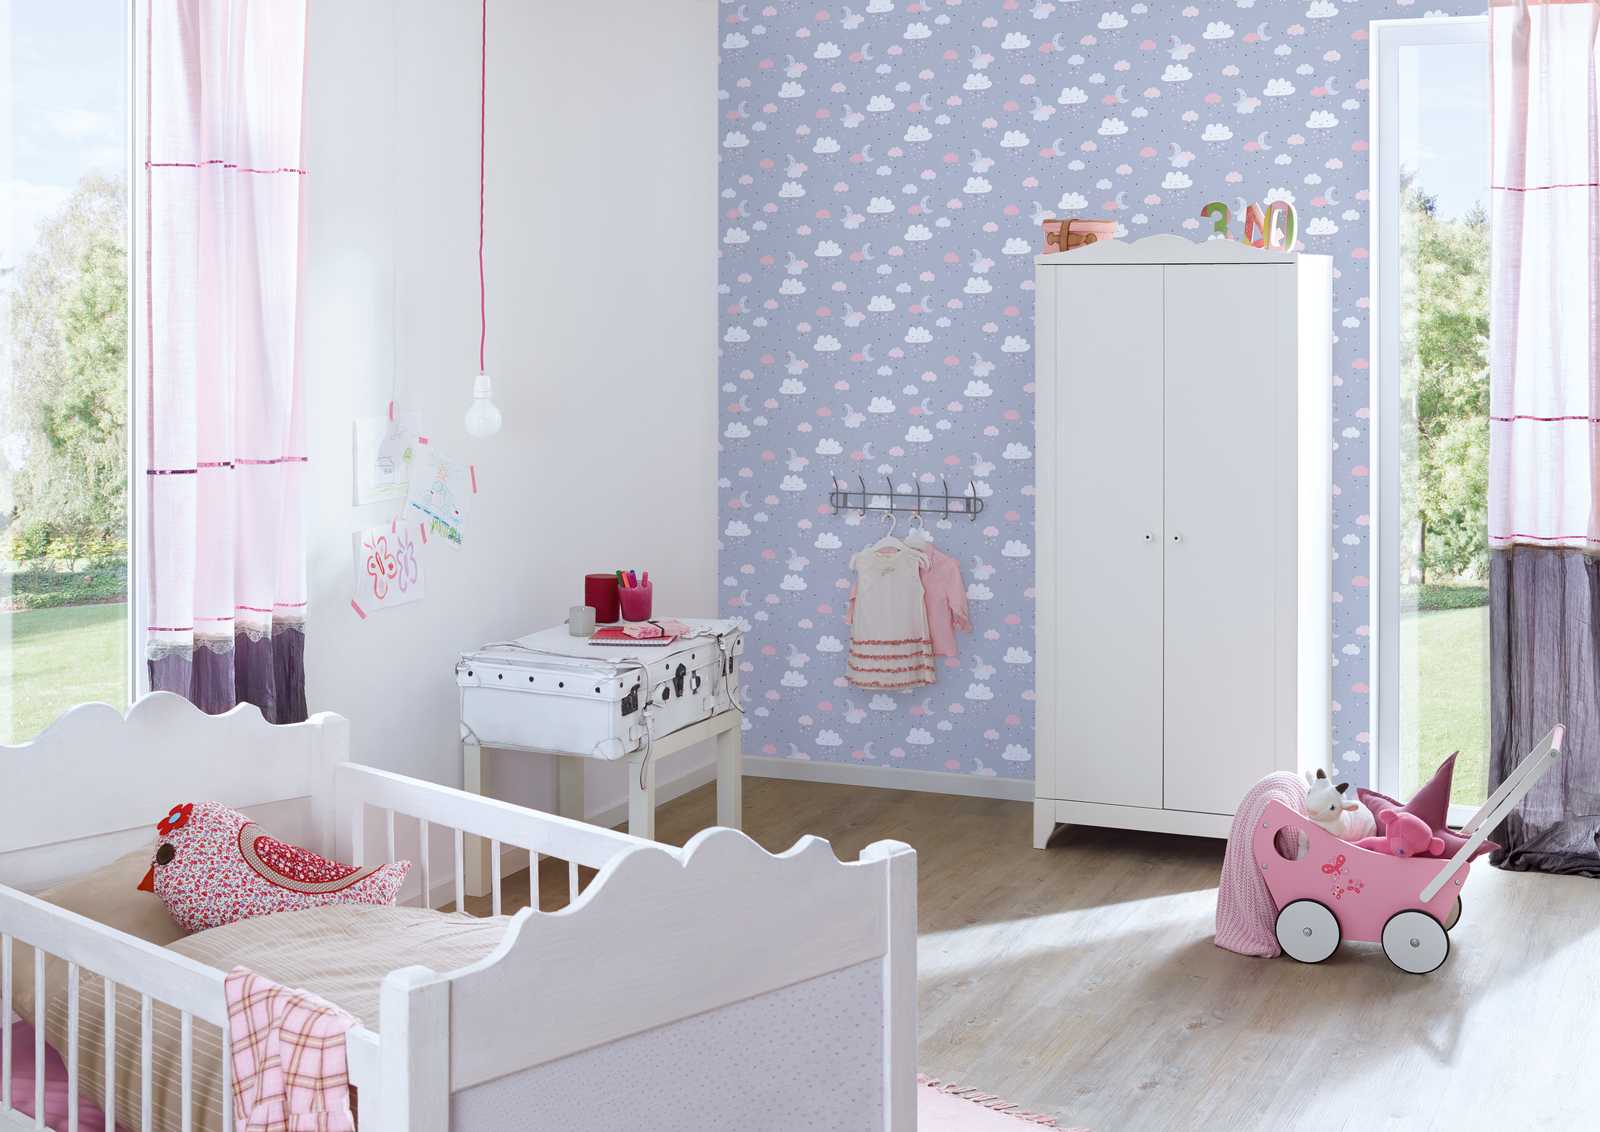             Papel pintado de habitación infantil niñas cielo nocturno - gris, rosa, beige
        